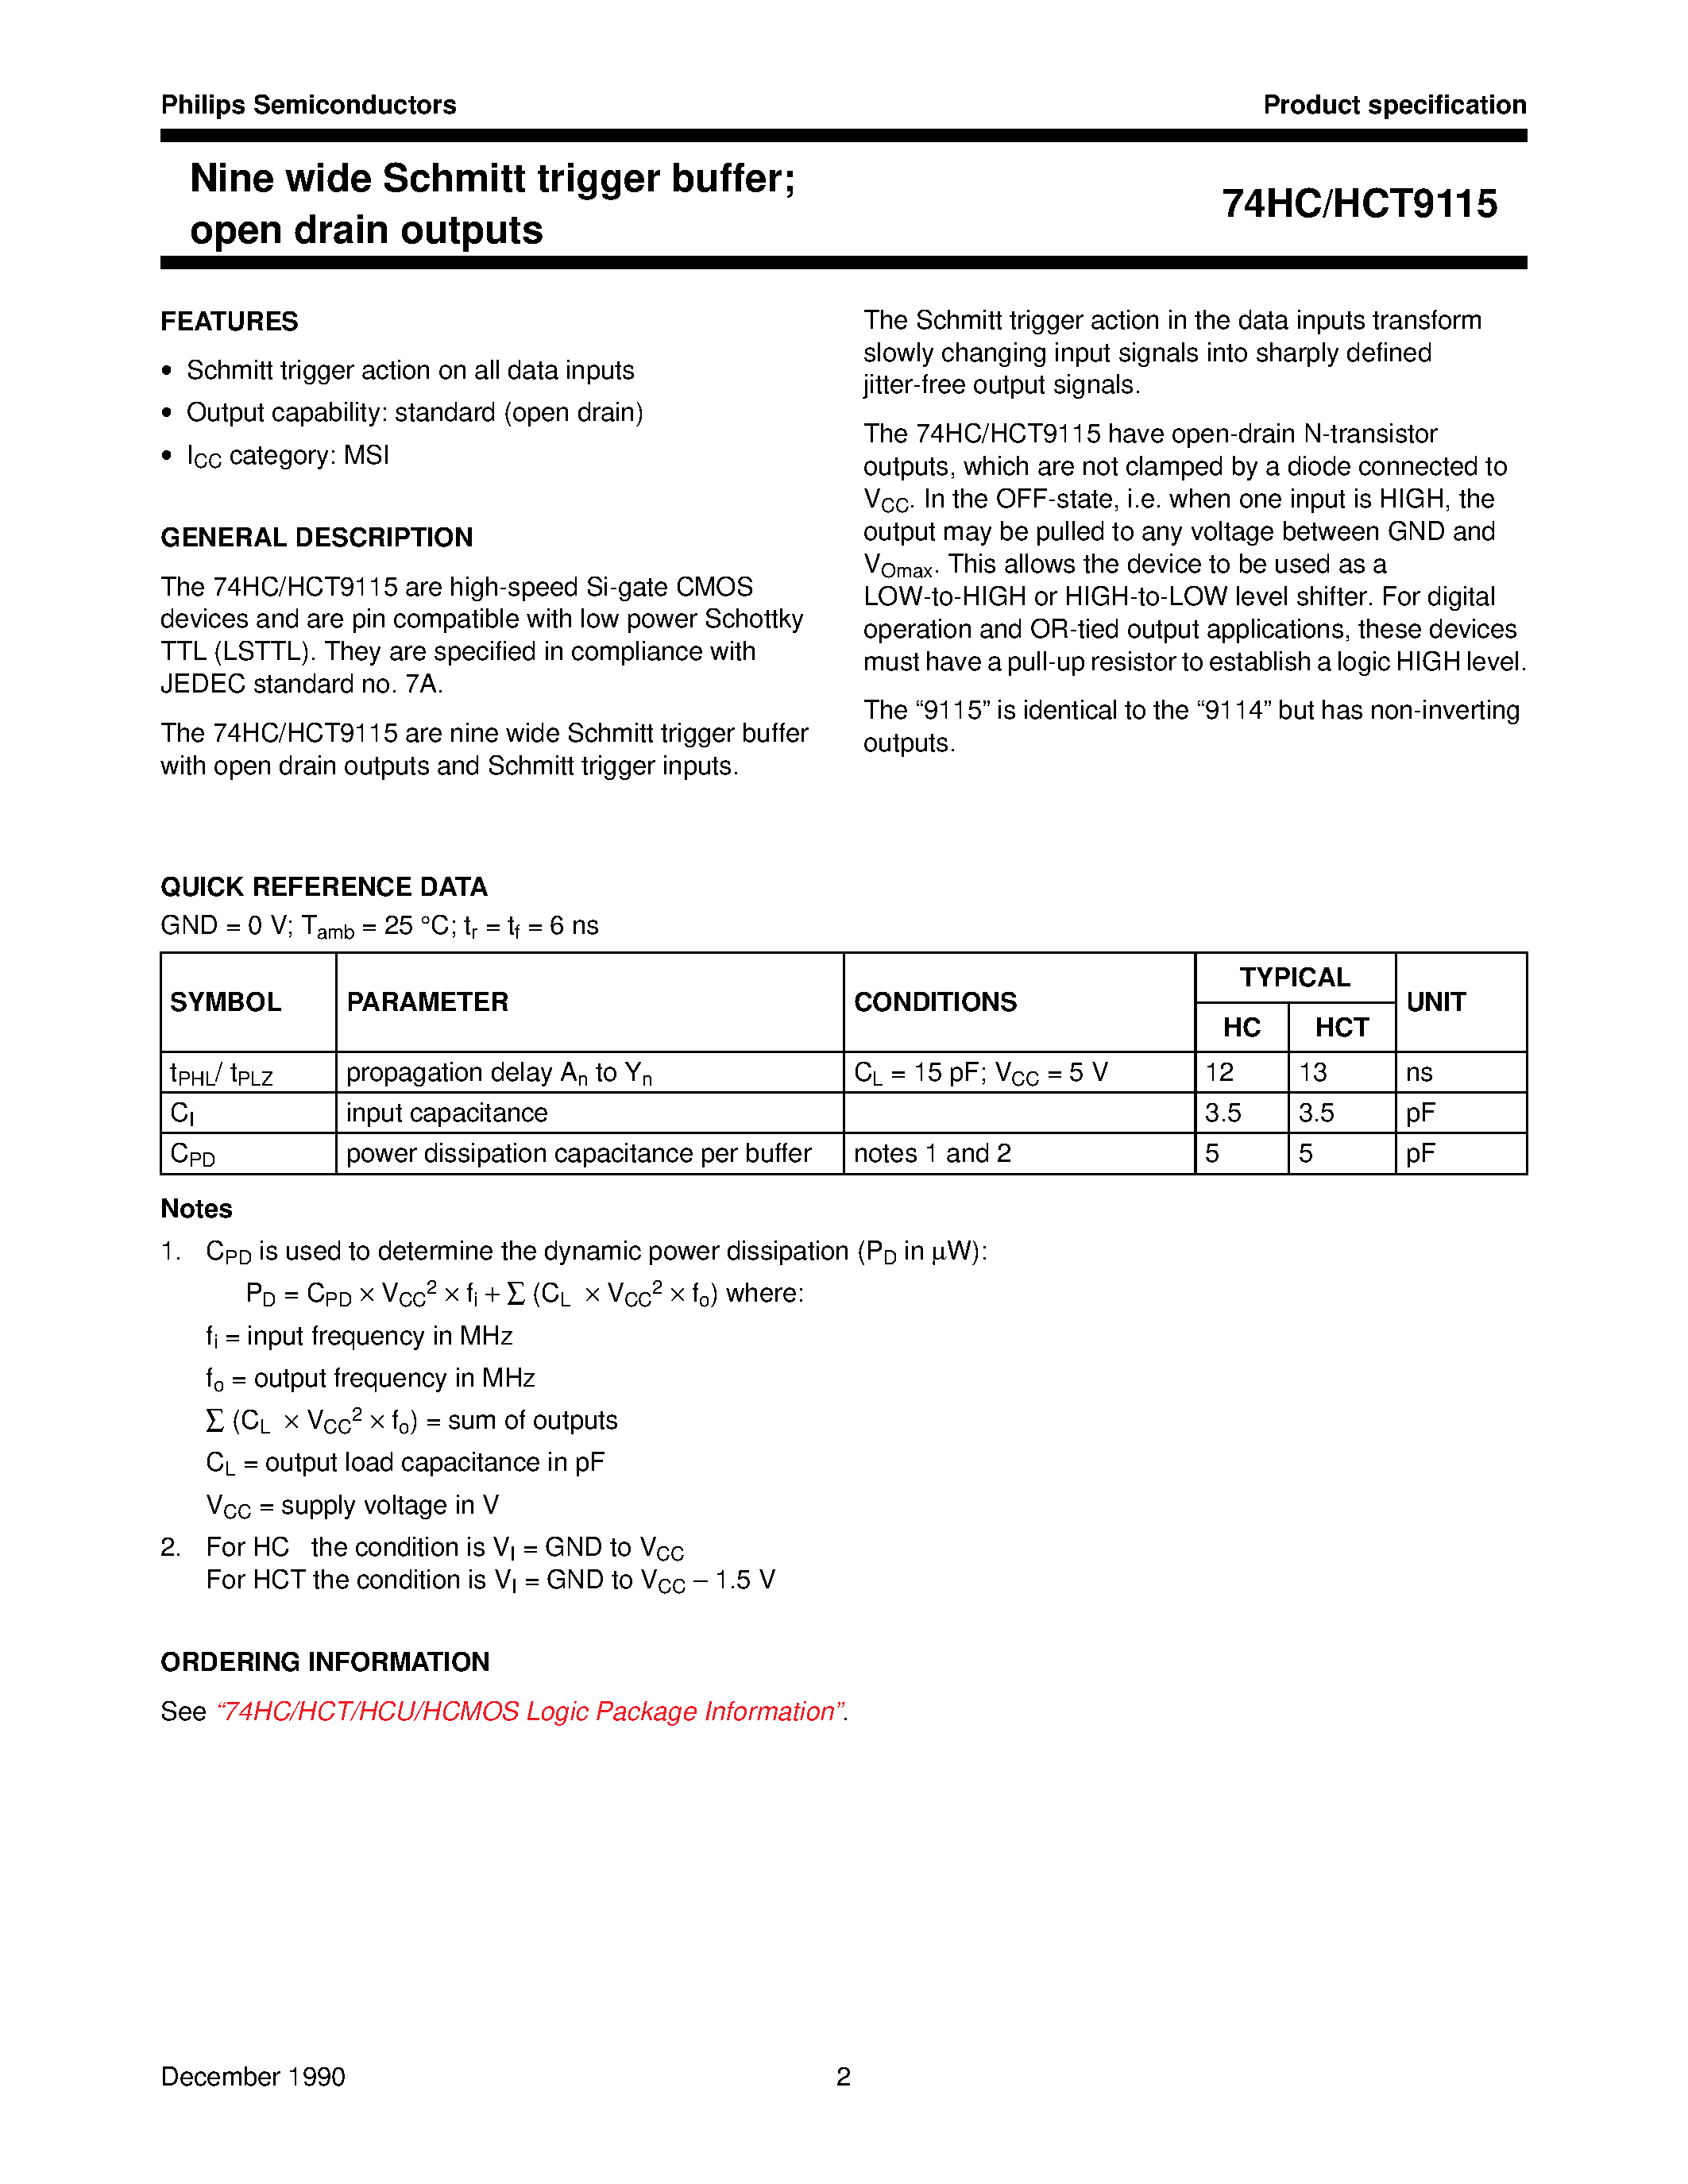 Datasheet 74HCT9115 - Nine wide Schmitt trigger buffer; open drain outputs page 2